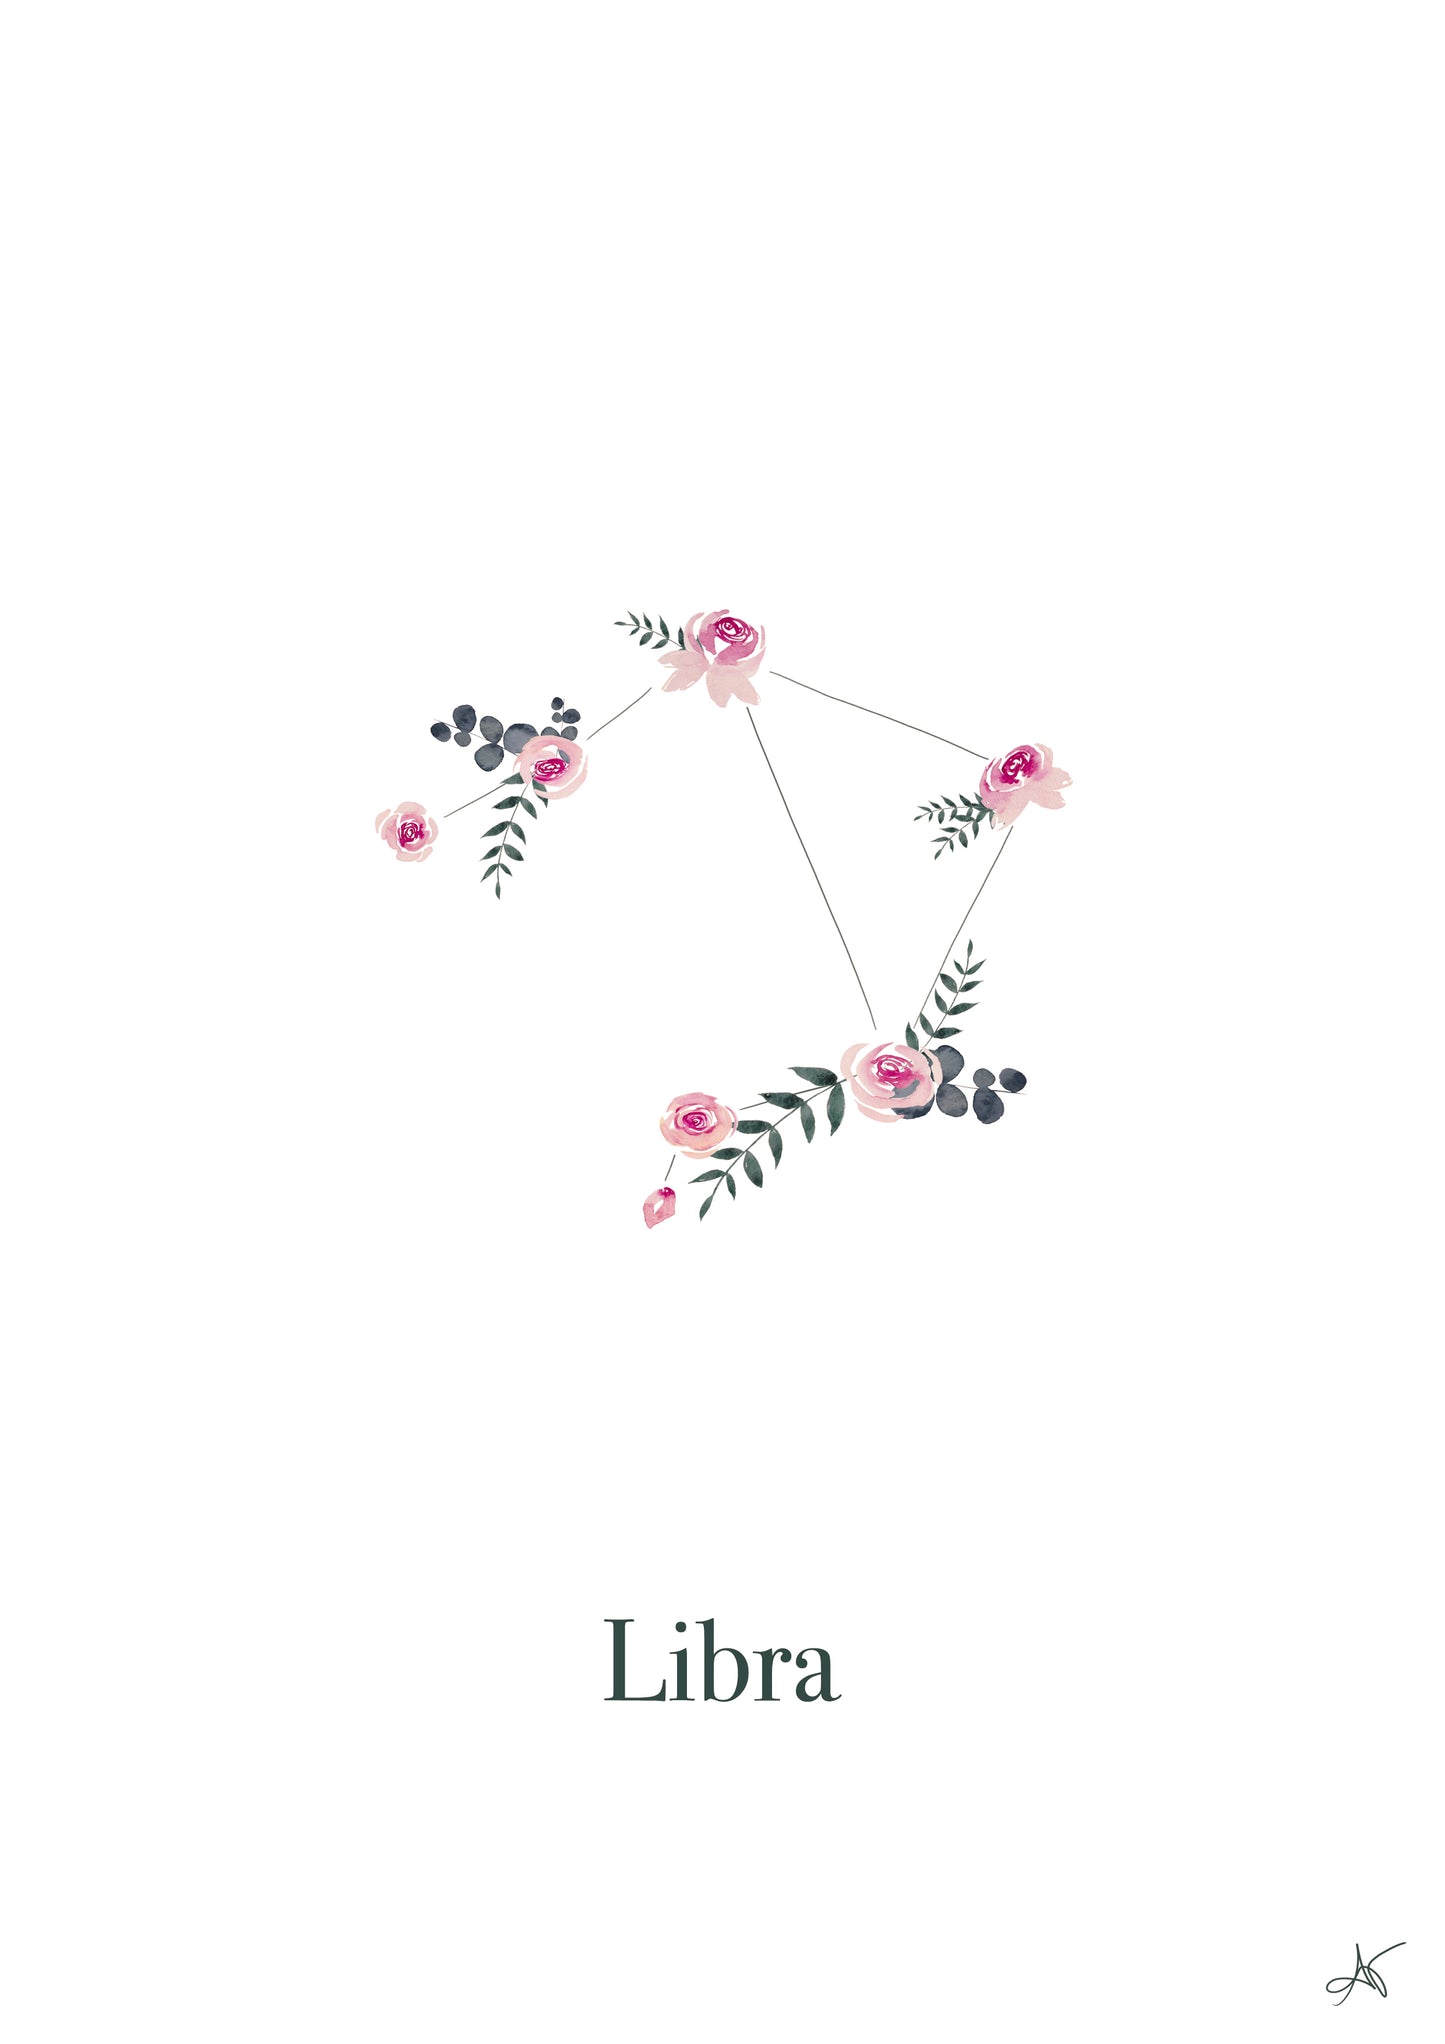 "Libra" - Roses